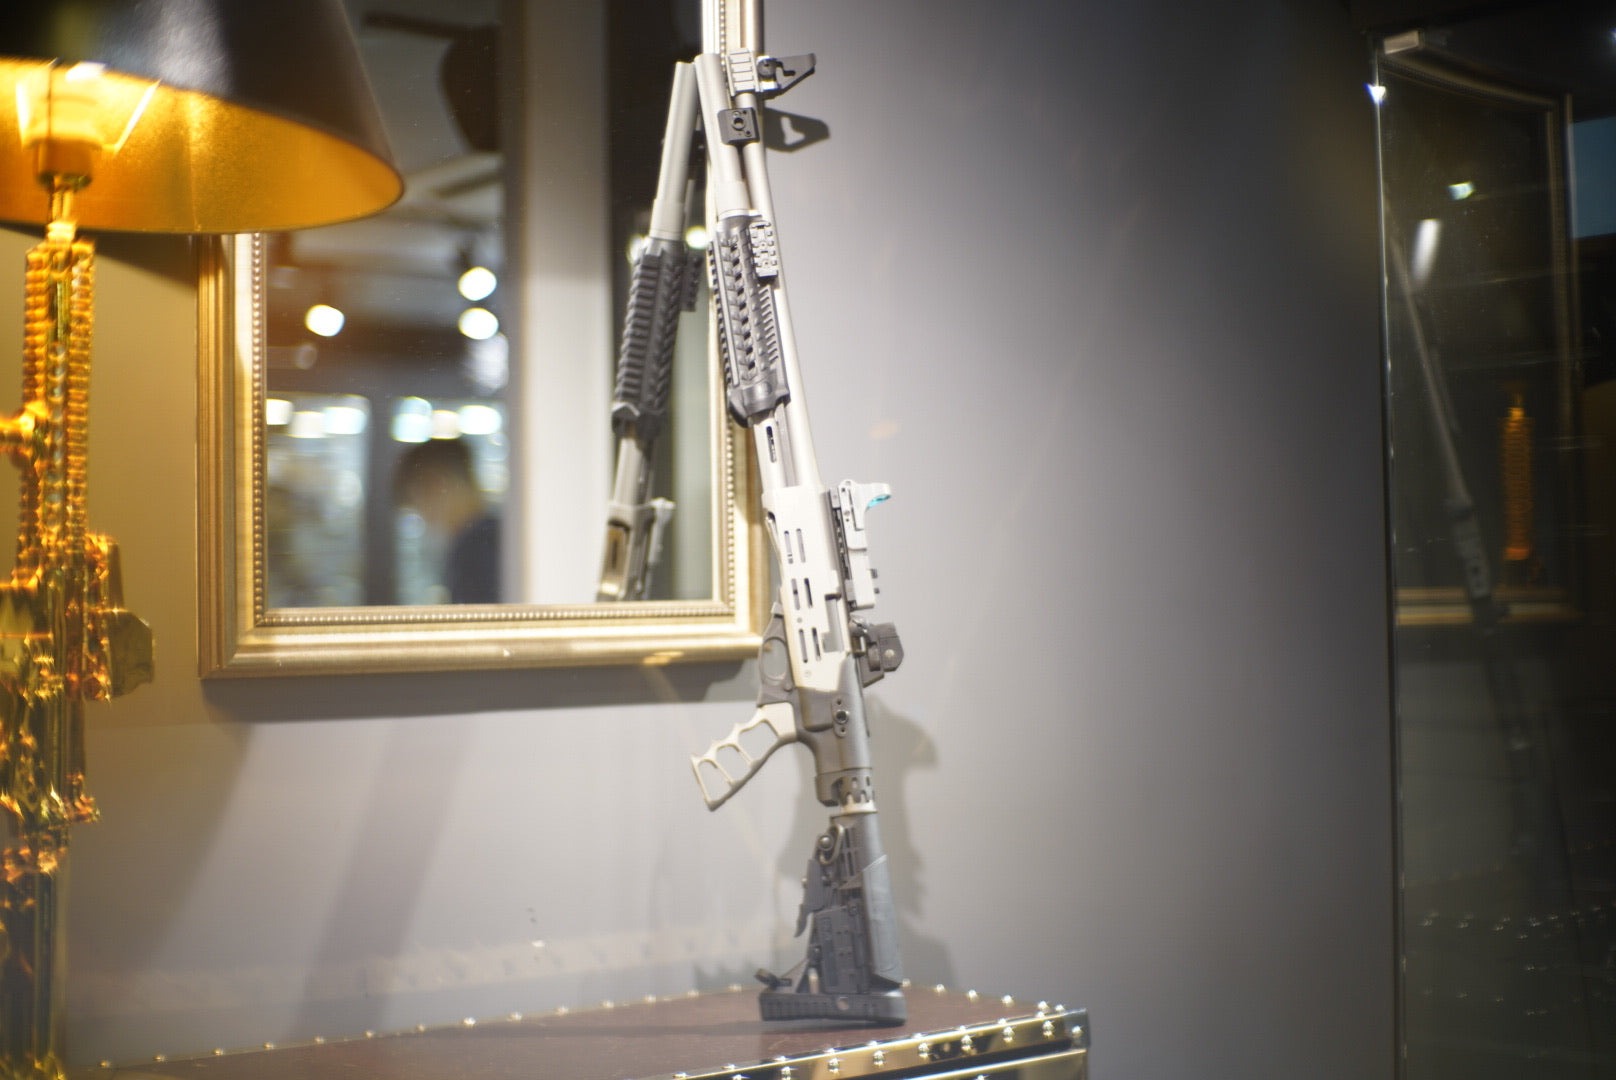 Airsoft Surgeon M870 Gun of the Year - Bang Bang Airsoft